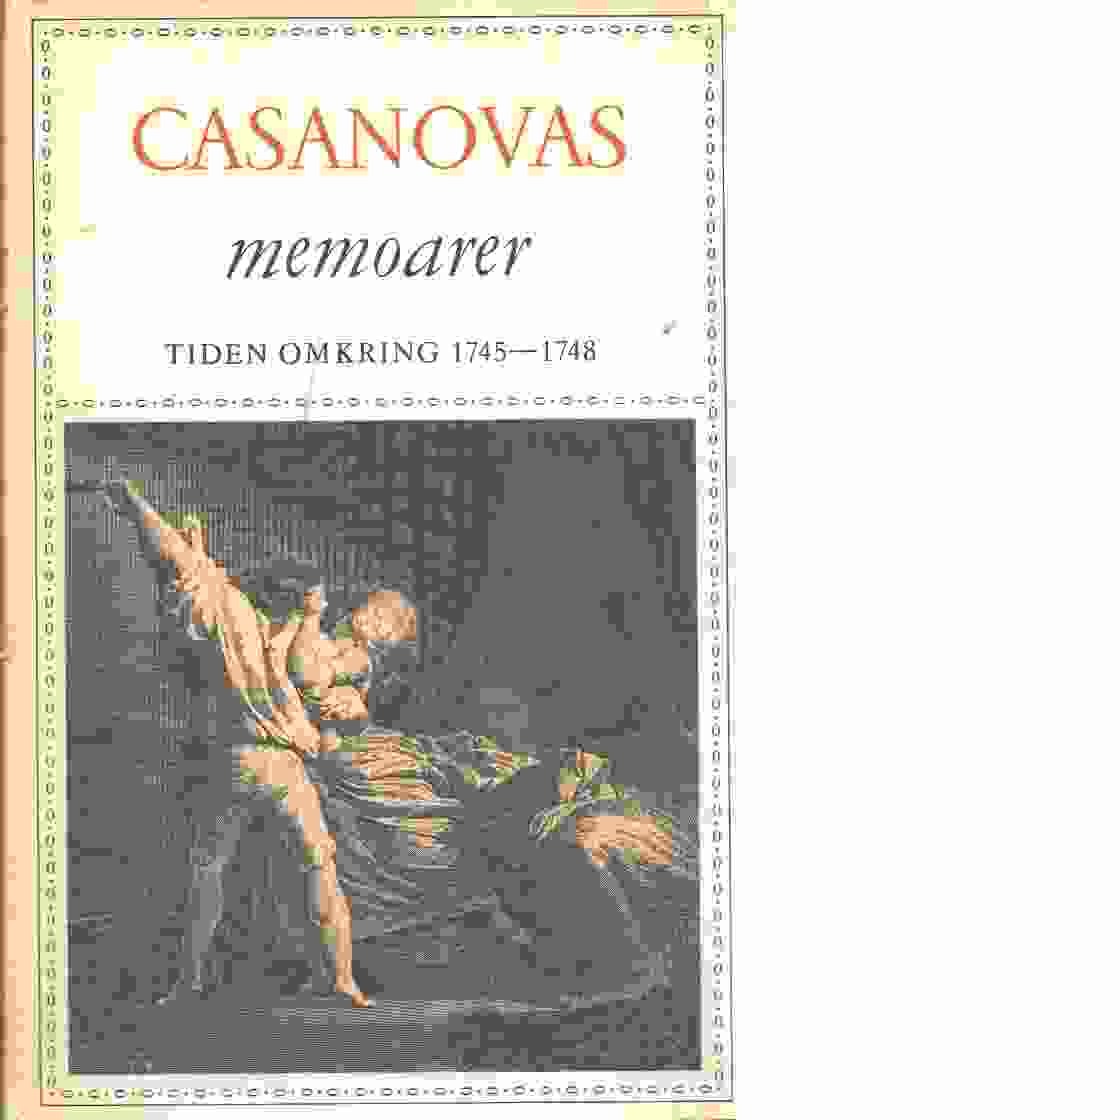 Casanovas memoarer tiden omkring 1745-1748 - Casanova, Giovanni Giacomo